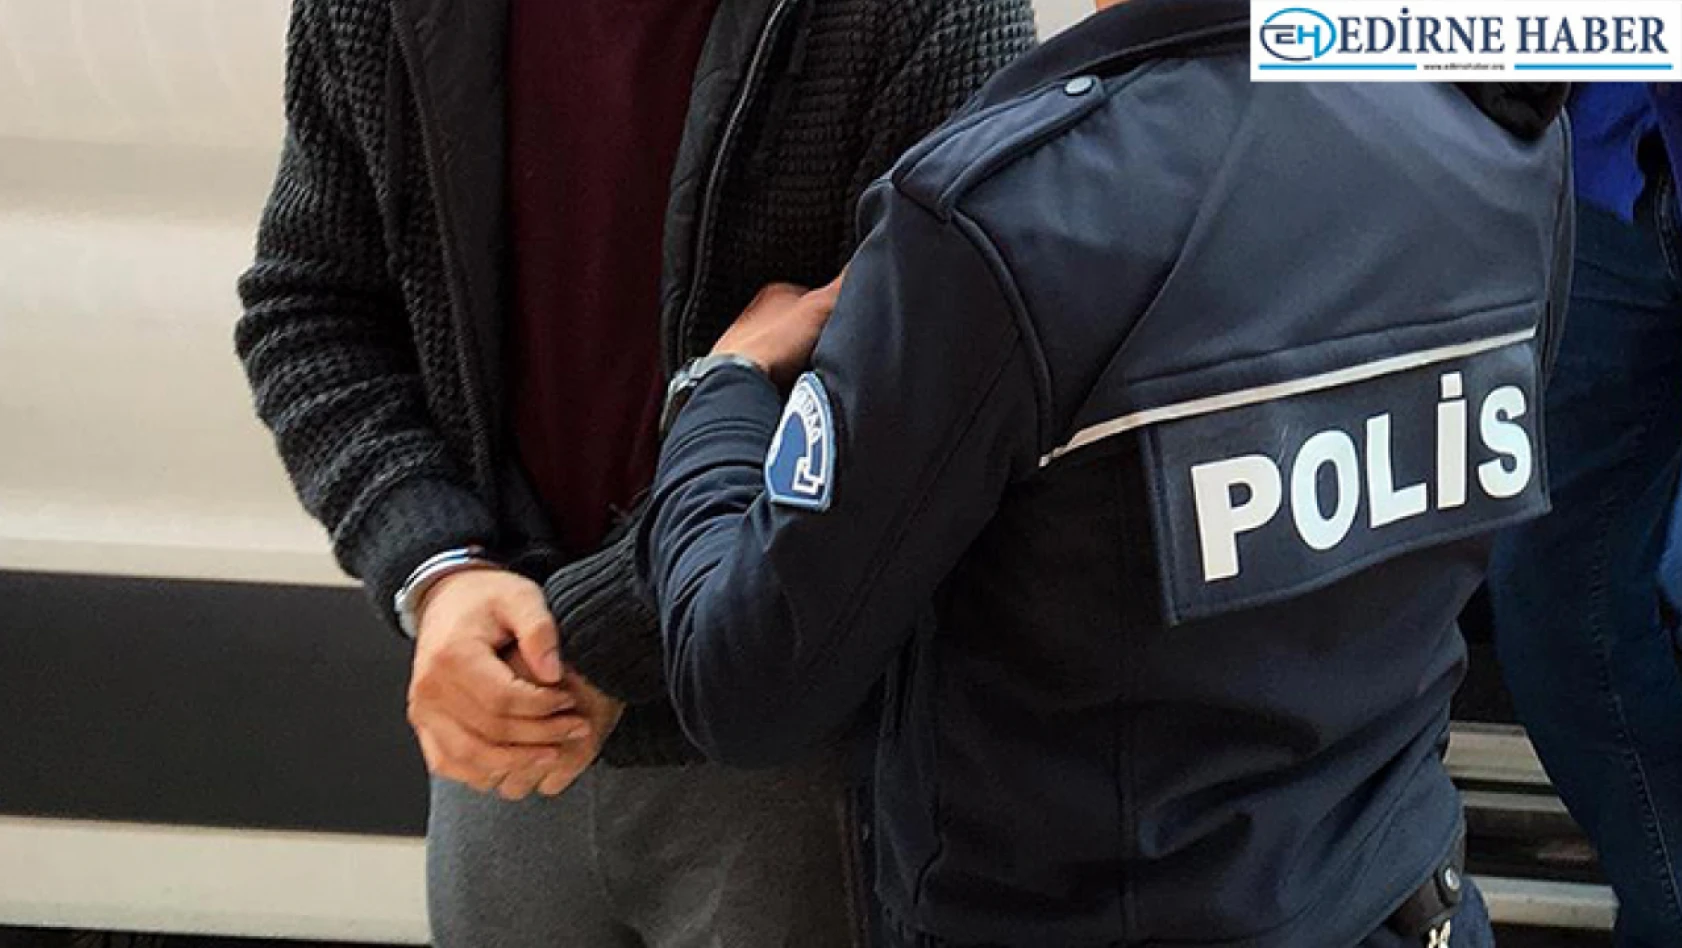 Edirne'de tartıştığı kişiyi bıçakla yaralayan şüpheli tutuklandı